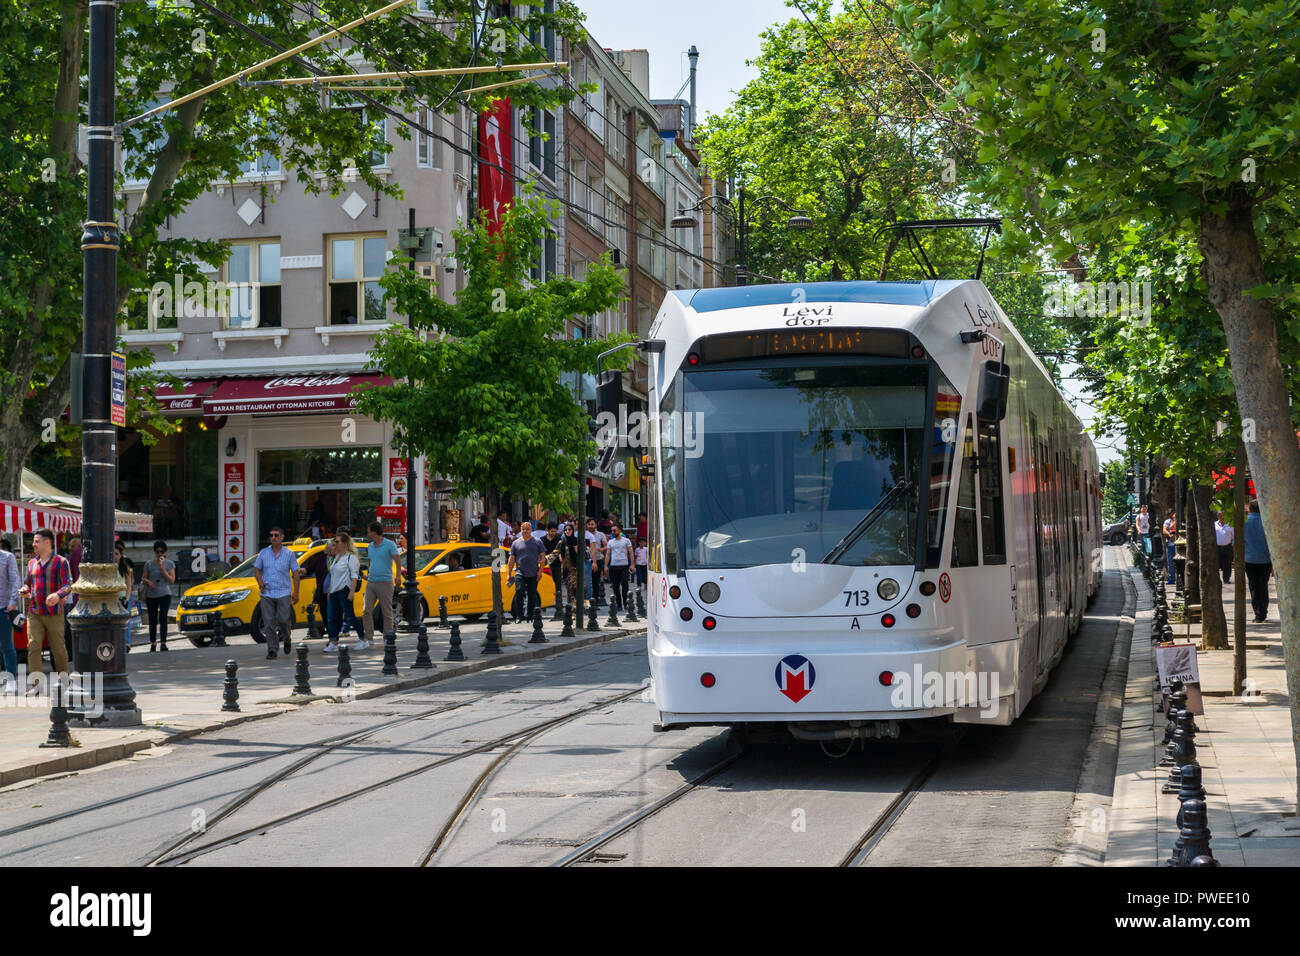 Un Kabatas-Bagcilar T1 tramway Métro électrique descend dans un boulevard passé les bâtiments et les personnes dans le district de Fatih de la Corne d'or, Istanbul, Turke Banque D'Images